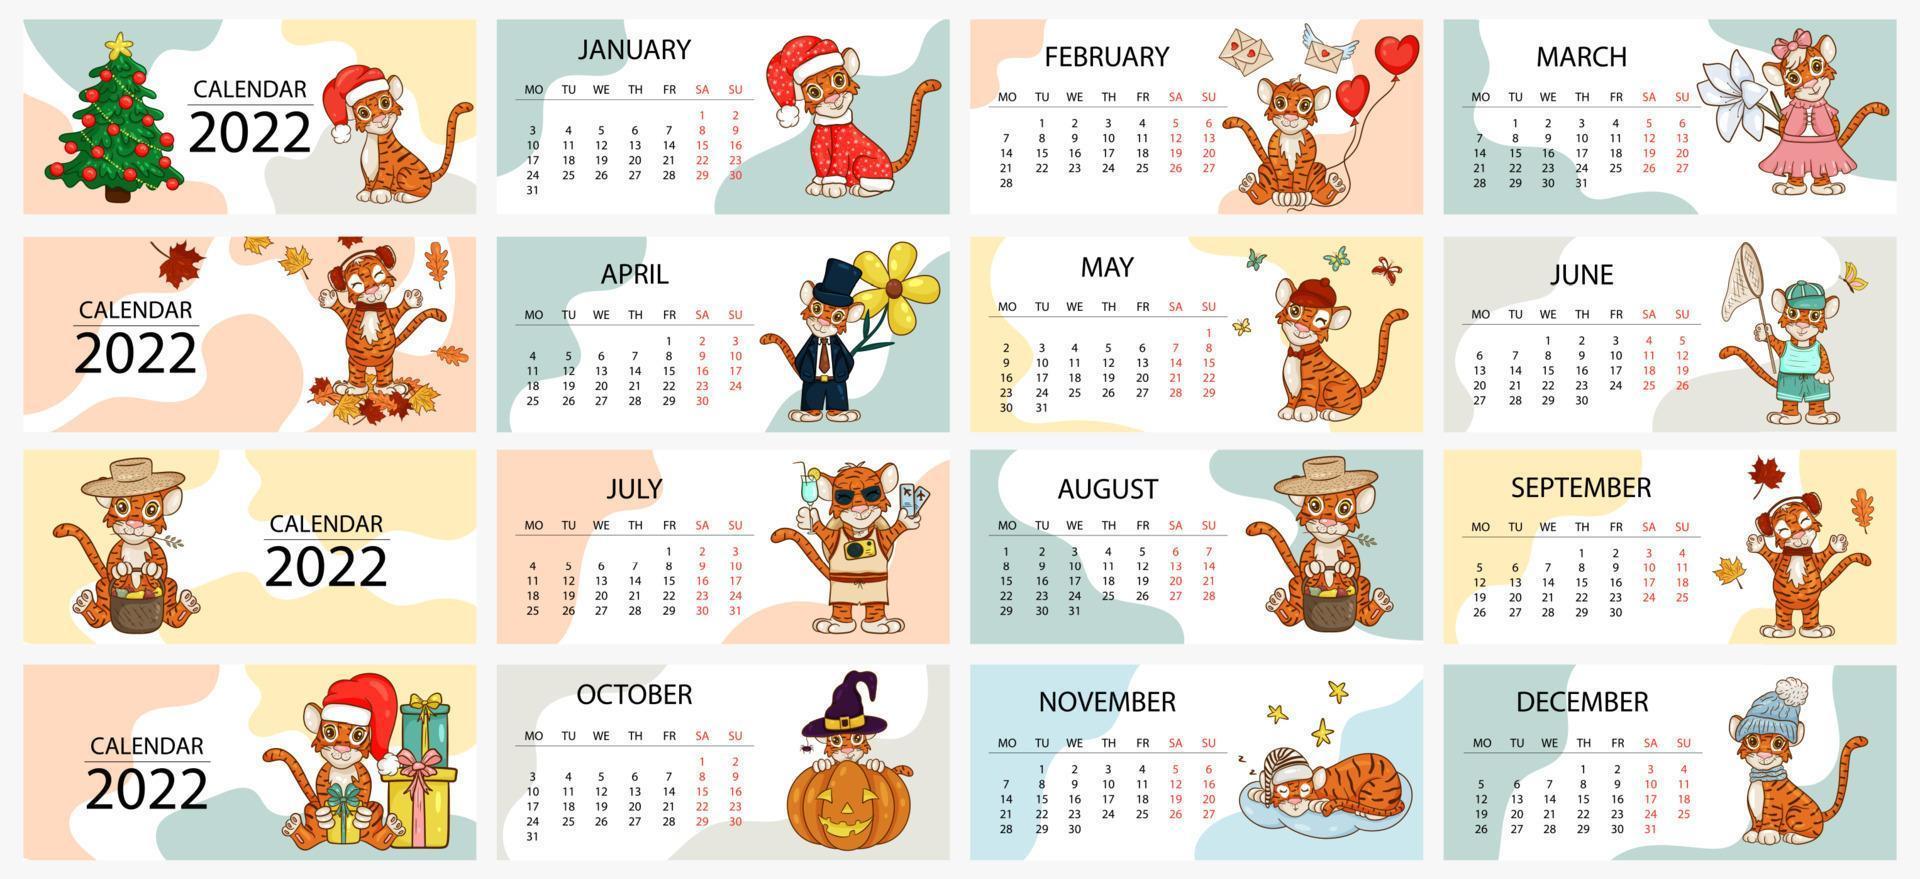 plantilla de diseño de calendario para 2022, el año del tigre según el calendario chino o oriental, con una ilustración del tigre, 12 meses. tabla horizontal con calendario para 2022. vector